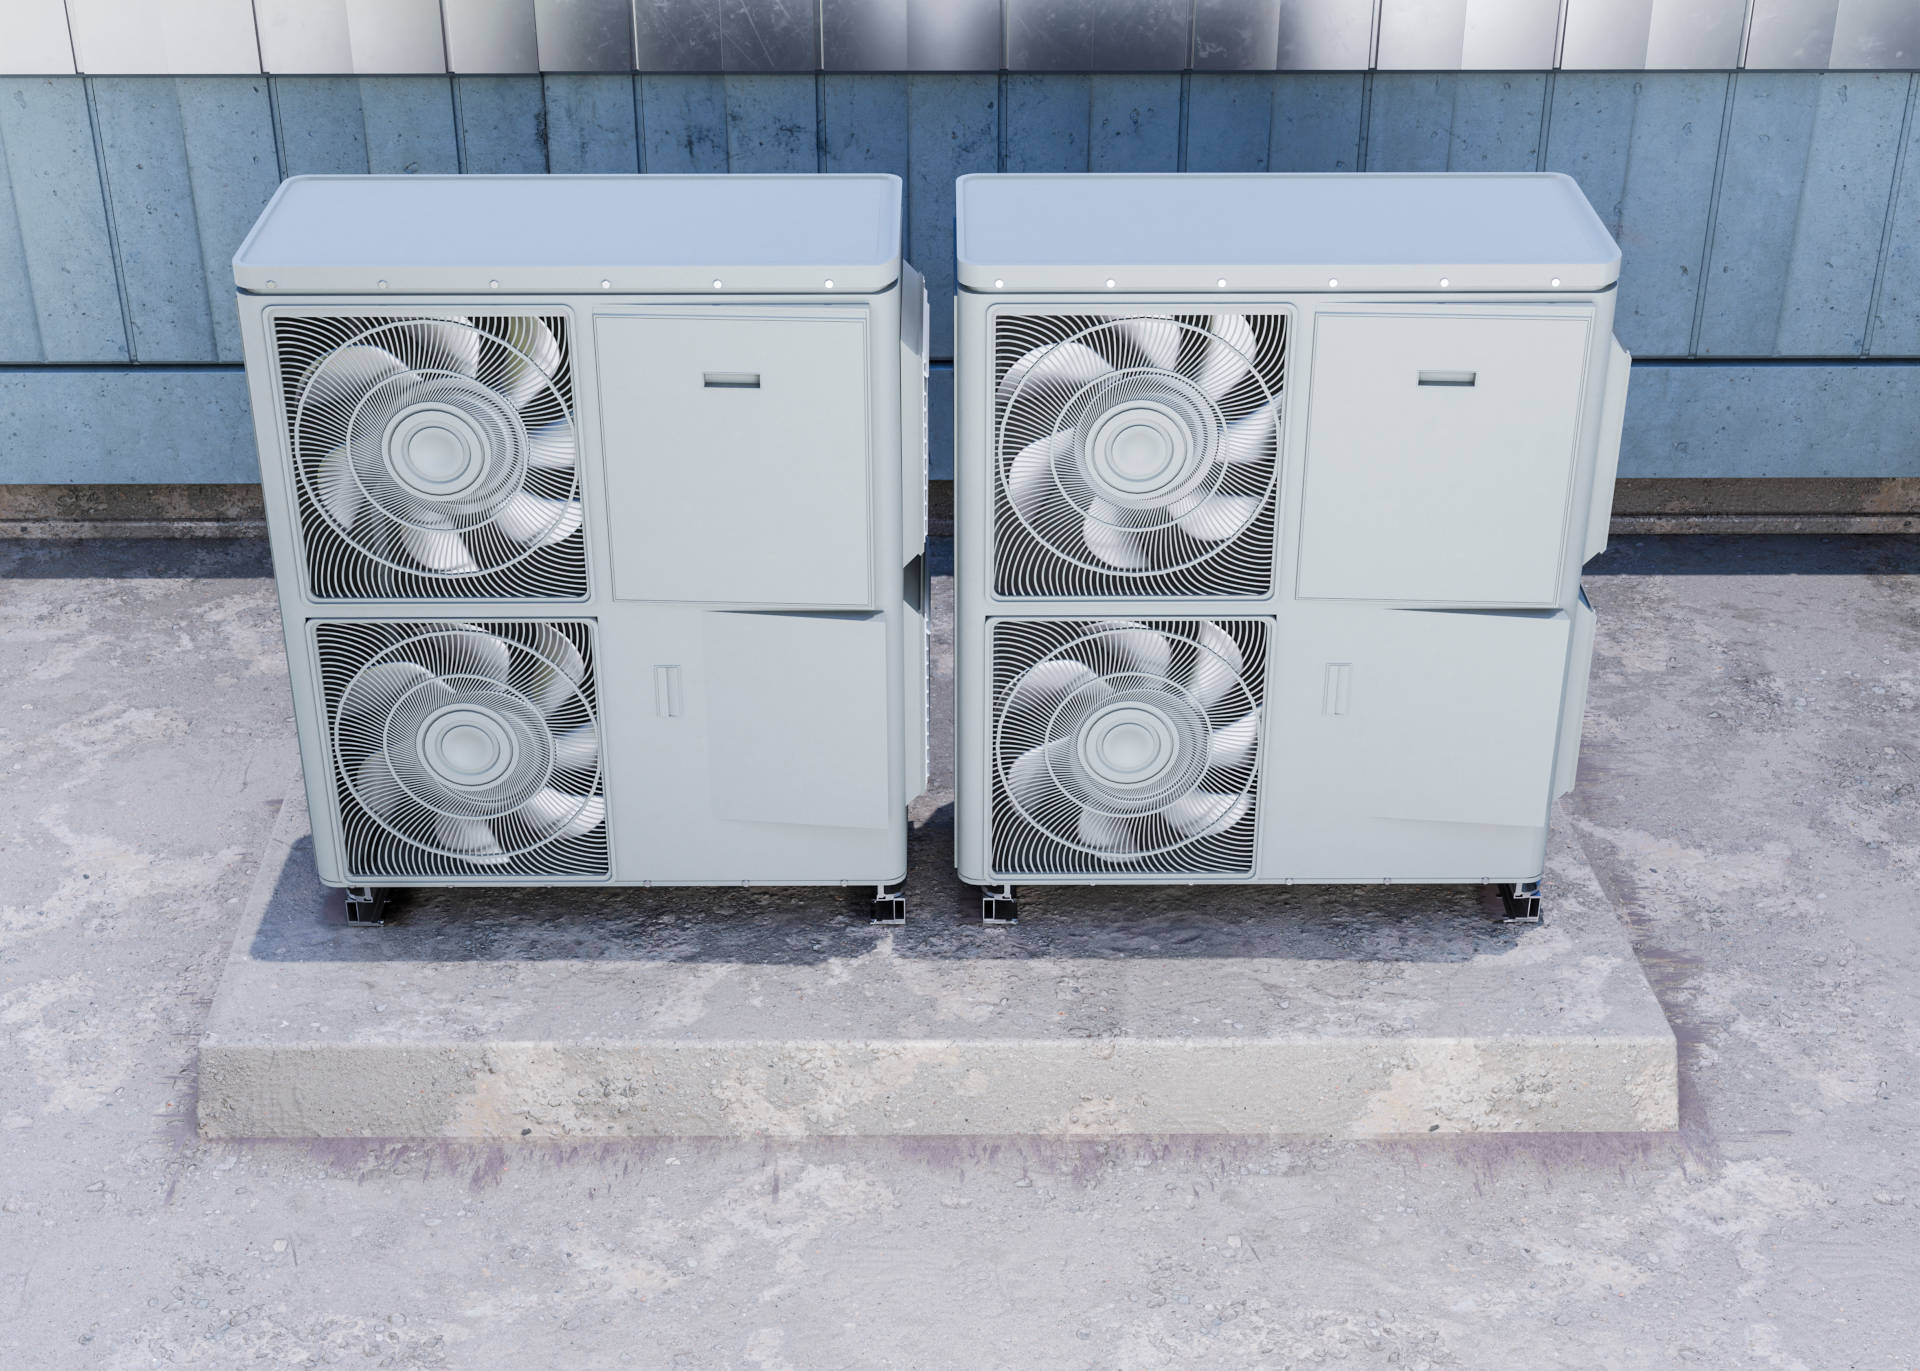 Pompa ciepła do domu 100m2 powinna być dostosowana mocą do zapotrzebowania na ciepło dla danego budynku